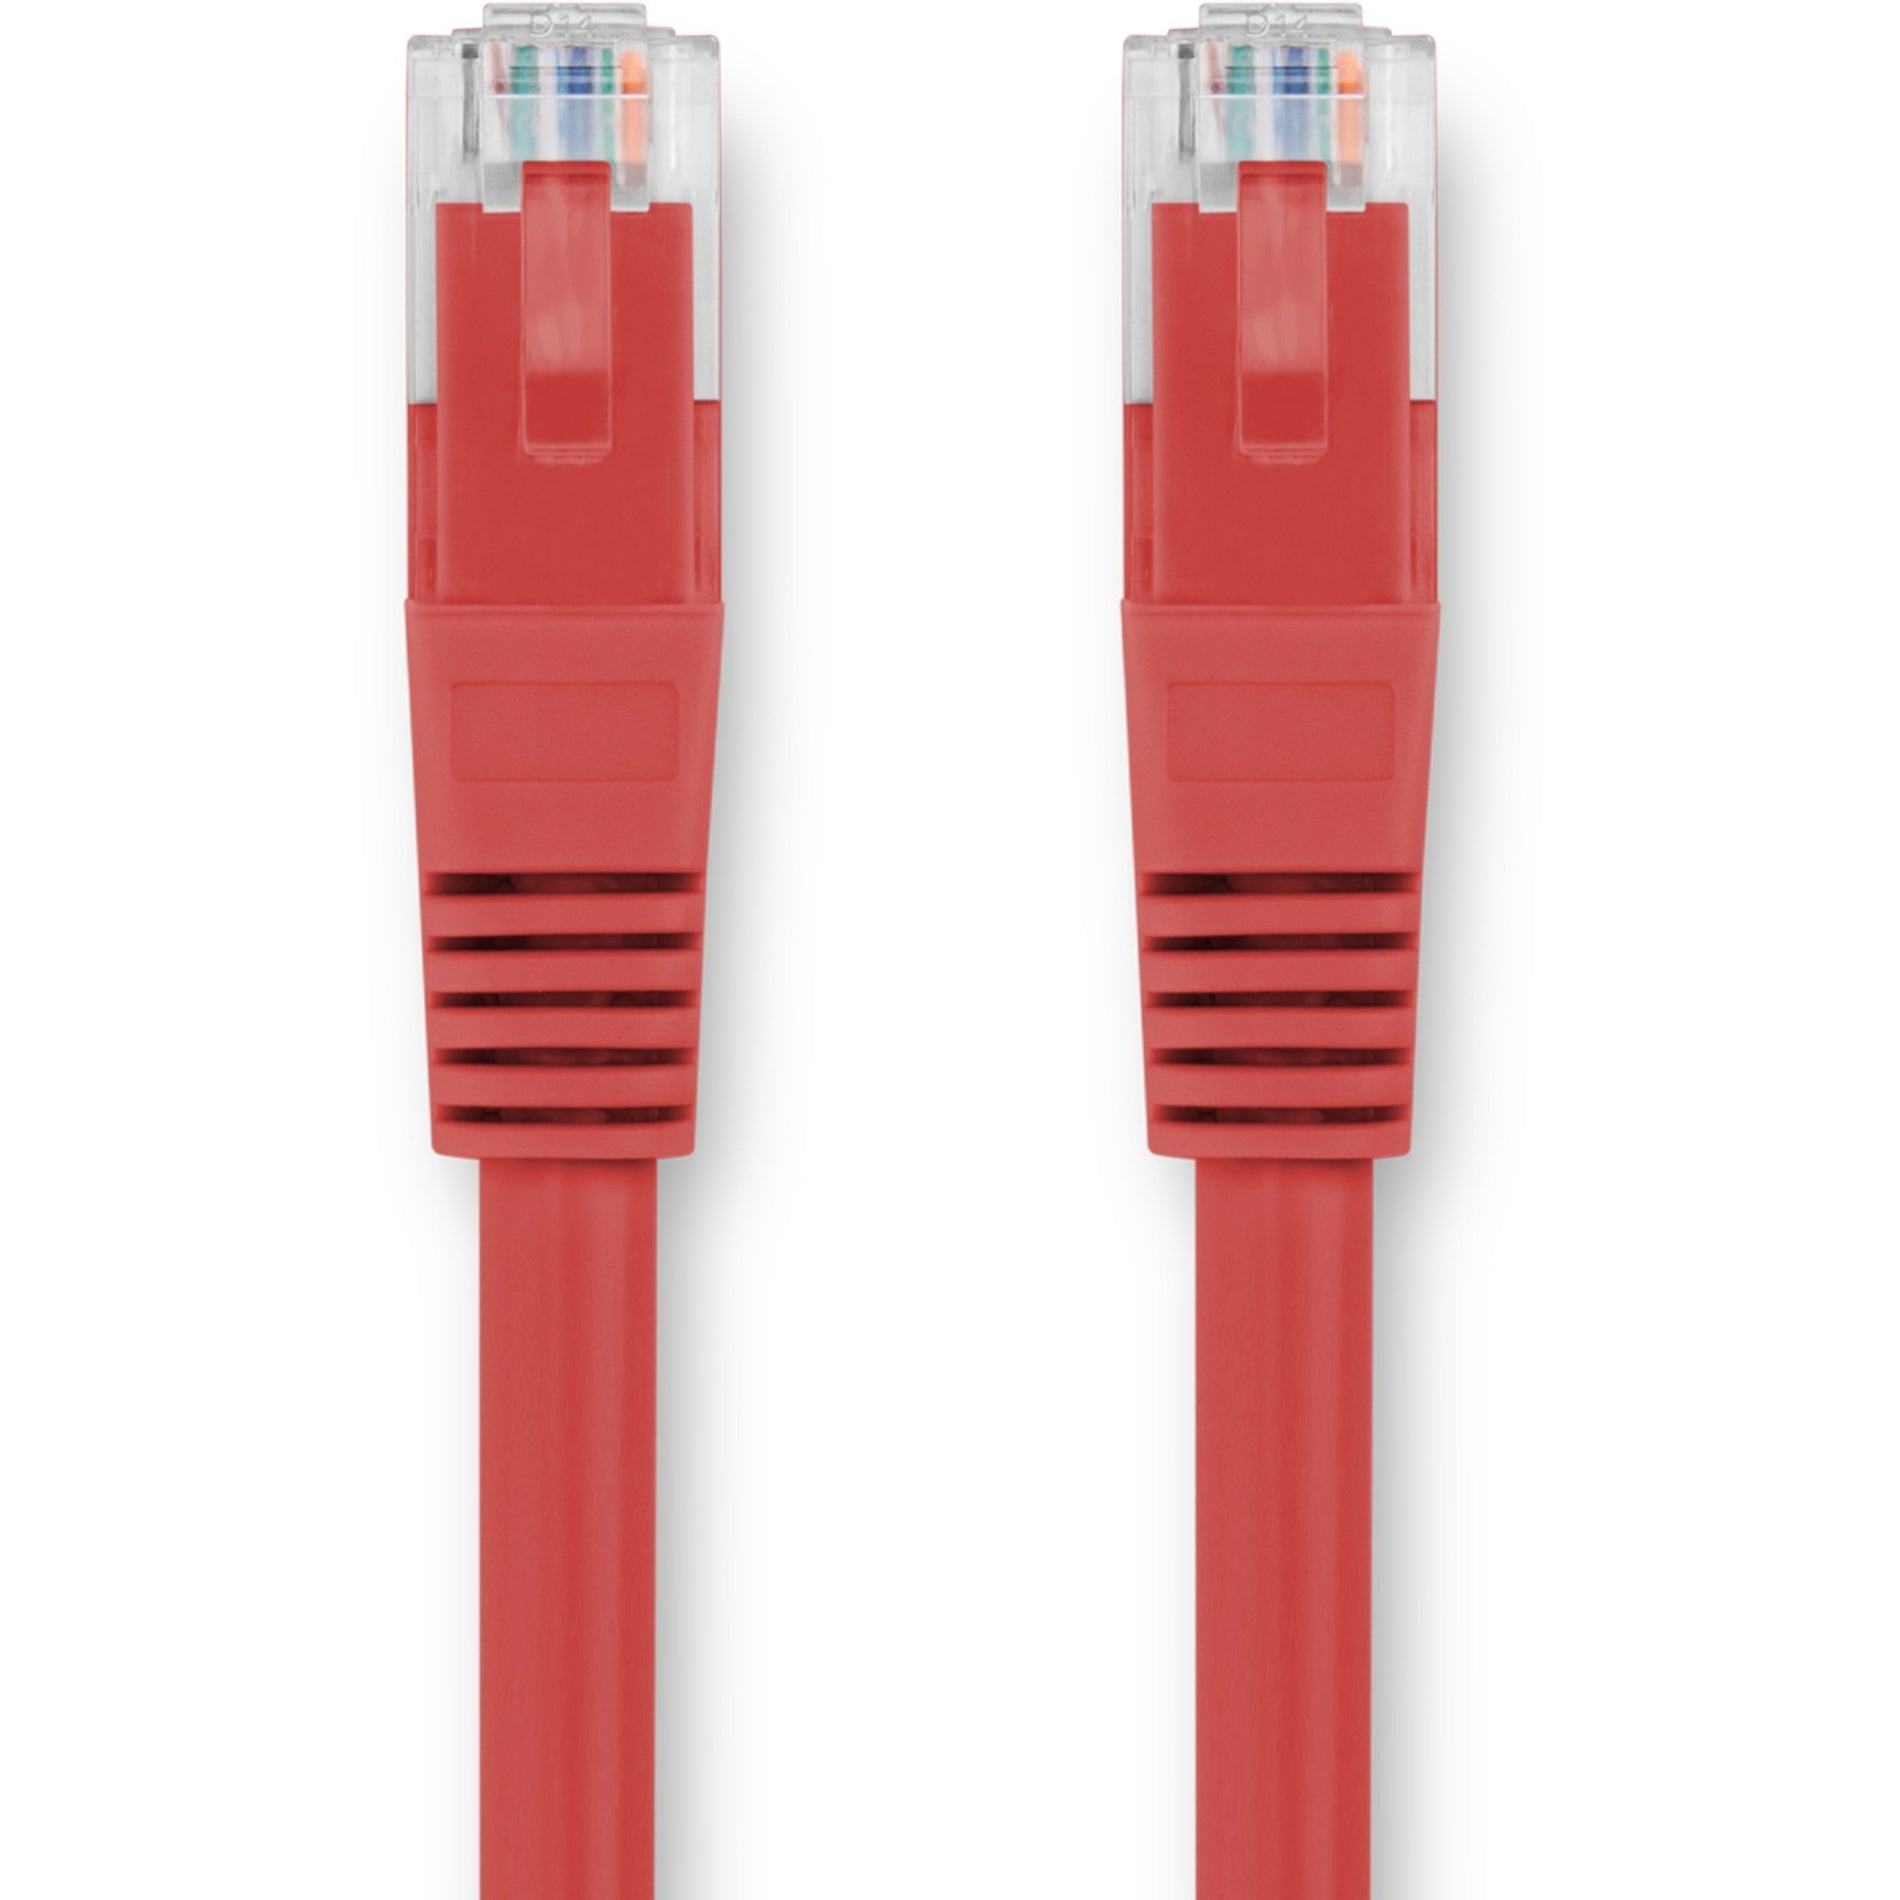 Rocstor Y10C337-RD Cat.6 Network Cable, 3 ft, 10 Gbit/s, Lifetime Warranty